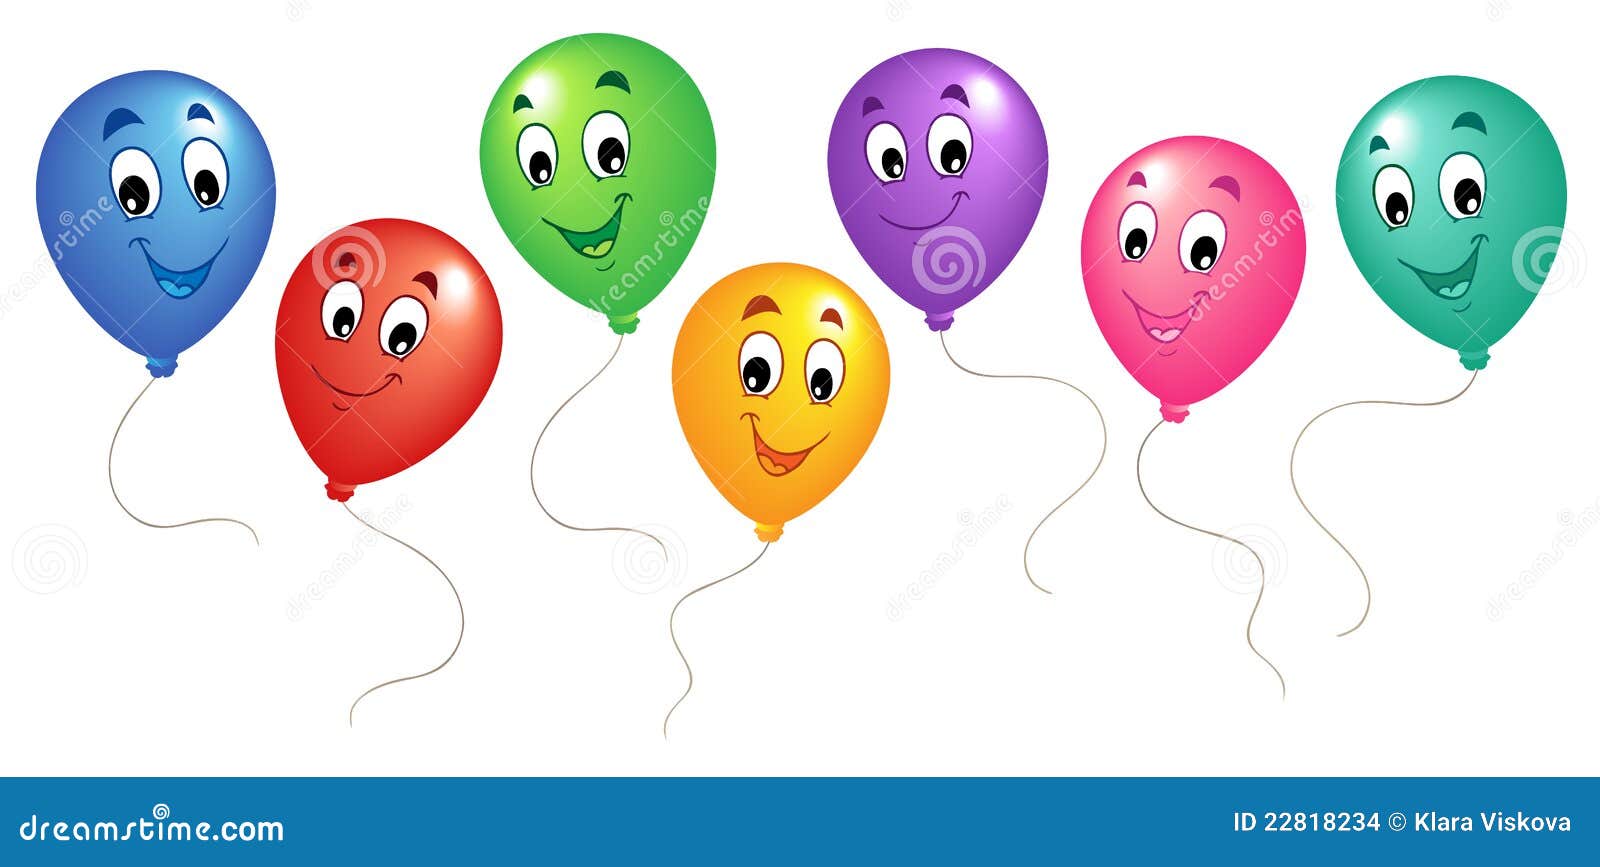 Cartoon Balloons Stock Illustrations – 50,566 Cartoon Balloons Stock  Illustrations, Vectors & Clipart - Dreamstime